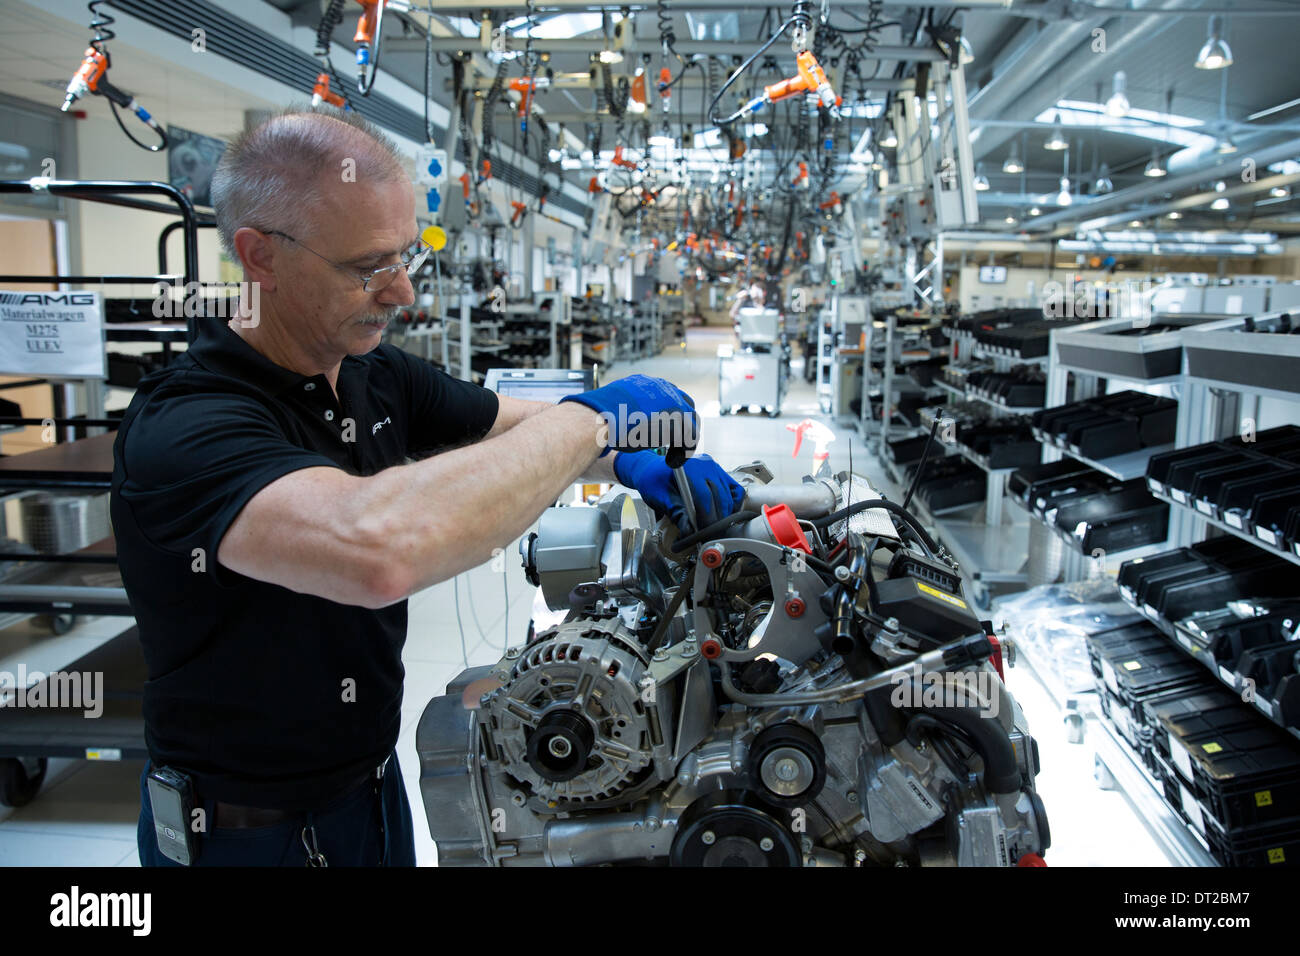 Mercedes-AMG Motor Produktionsfabrik in Affalterbach, Deutschland - Ingenieur Hand-Gebäude einen M275 6 Liter V12-Biturbo-Motor Stockfoto